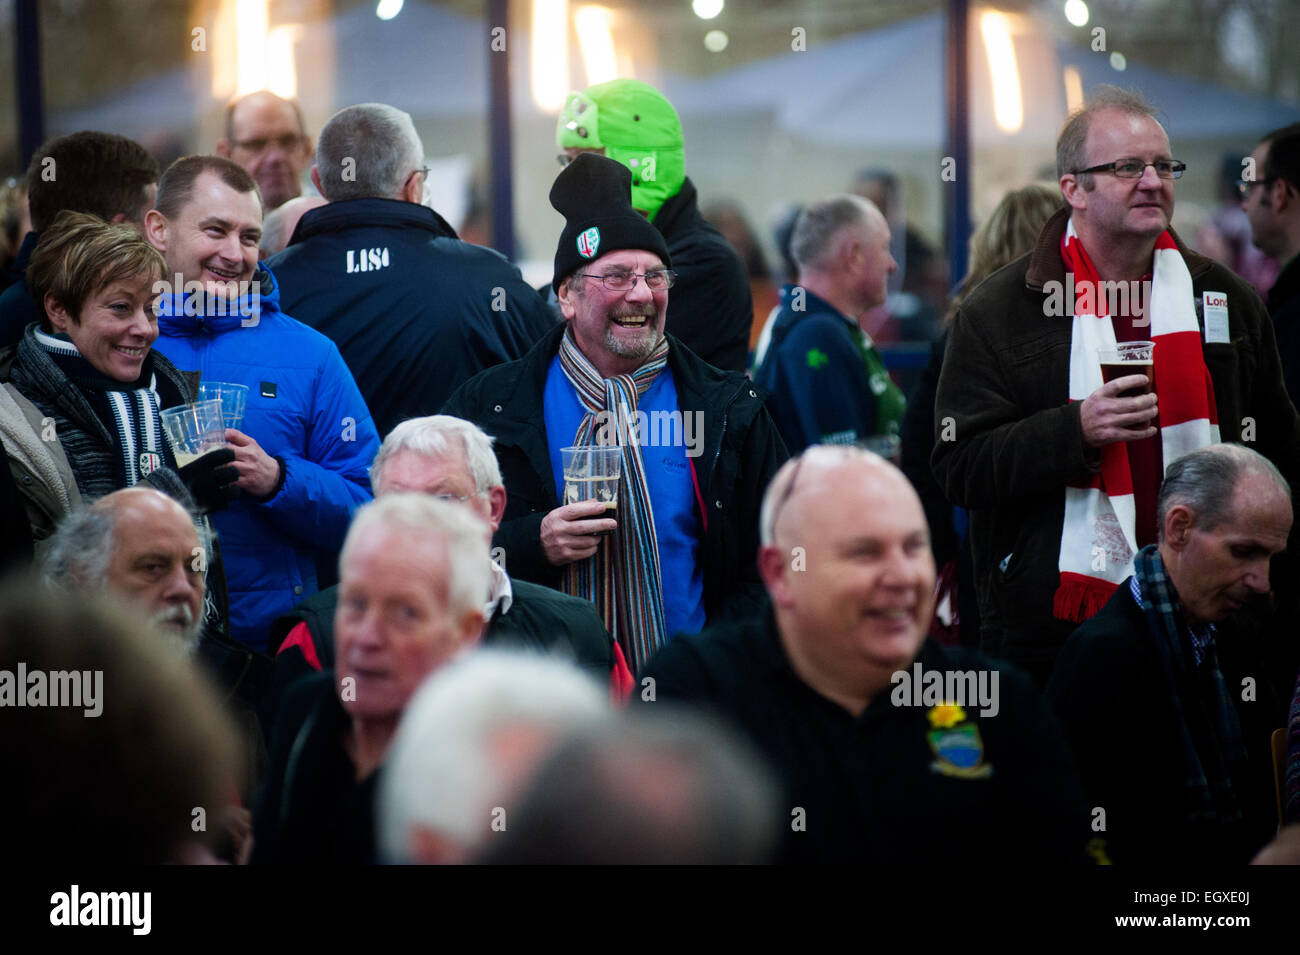 Welsh Rugby supporters dans les écharpes et tee-shirts d'alcool dans un bar  avant de rugby international contre la France Photo Stock - Alamy